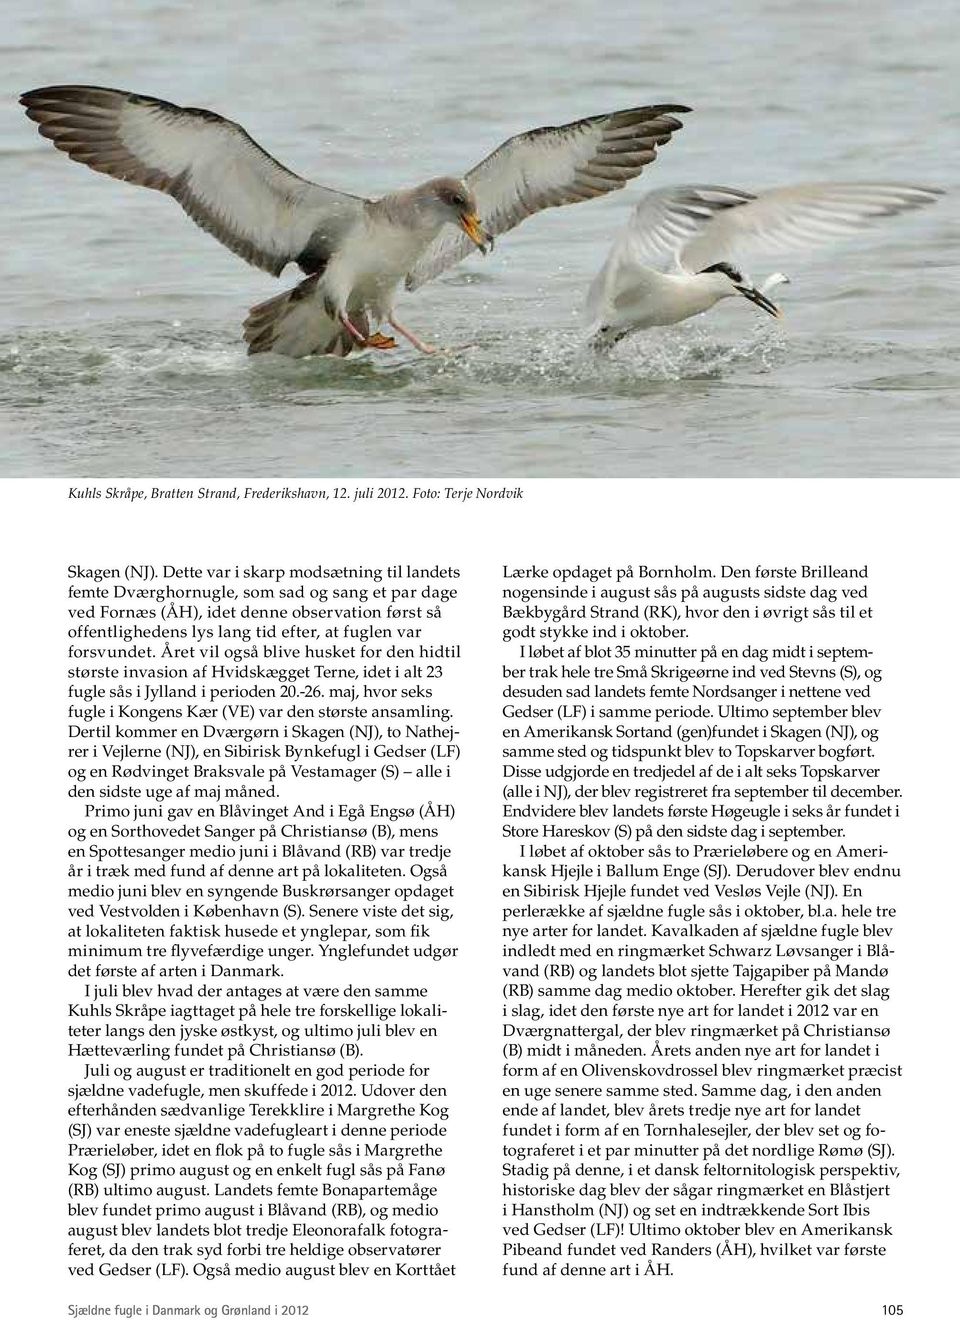 Året vil også blive husket for den hidtil største invasion af Hvidskægget Terne, idet i alt 23 fugle sås i Jylland i perioden 20.-26. maj, hvor seks fugle i Kongens Kær (VE) var den største ansamling.